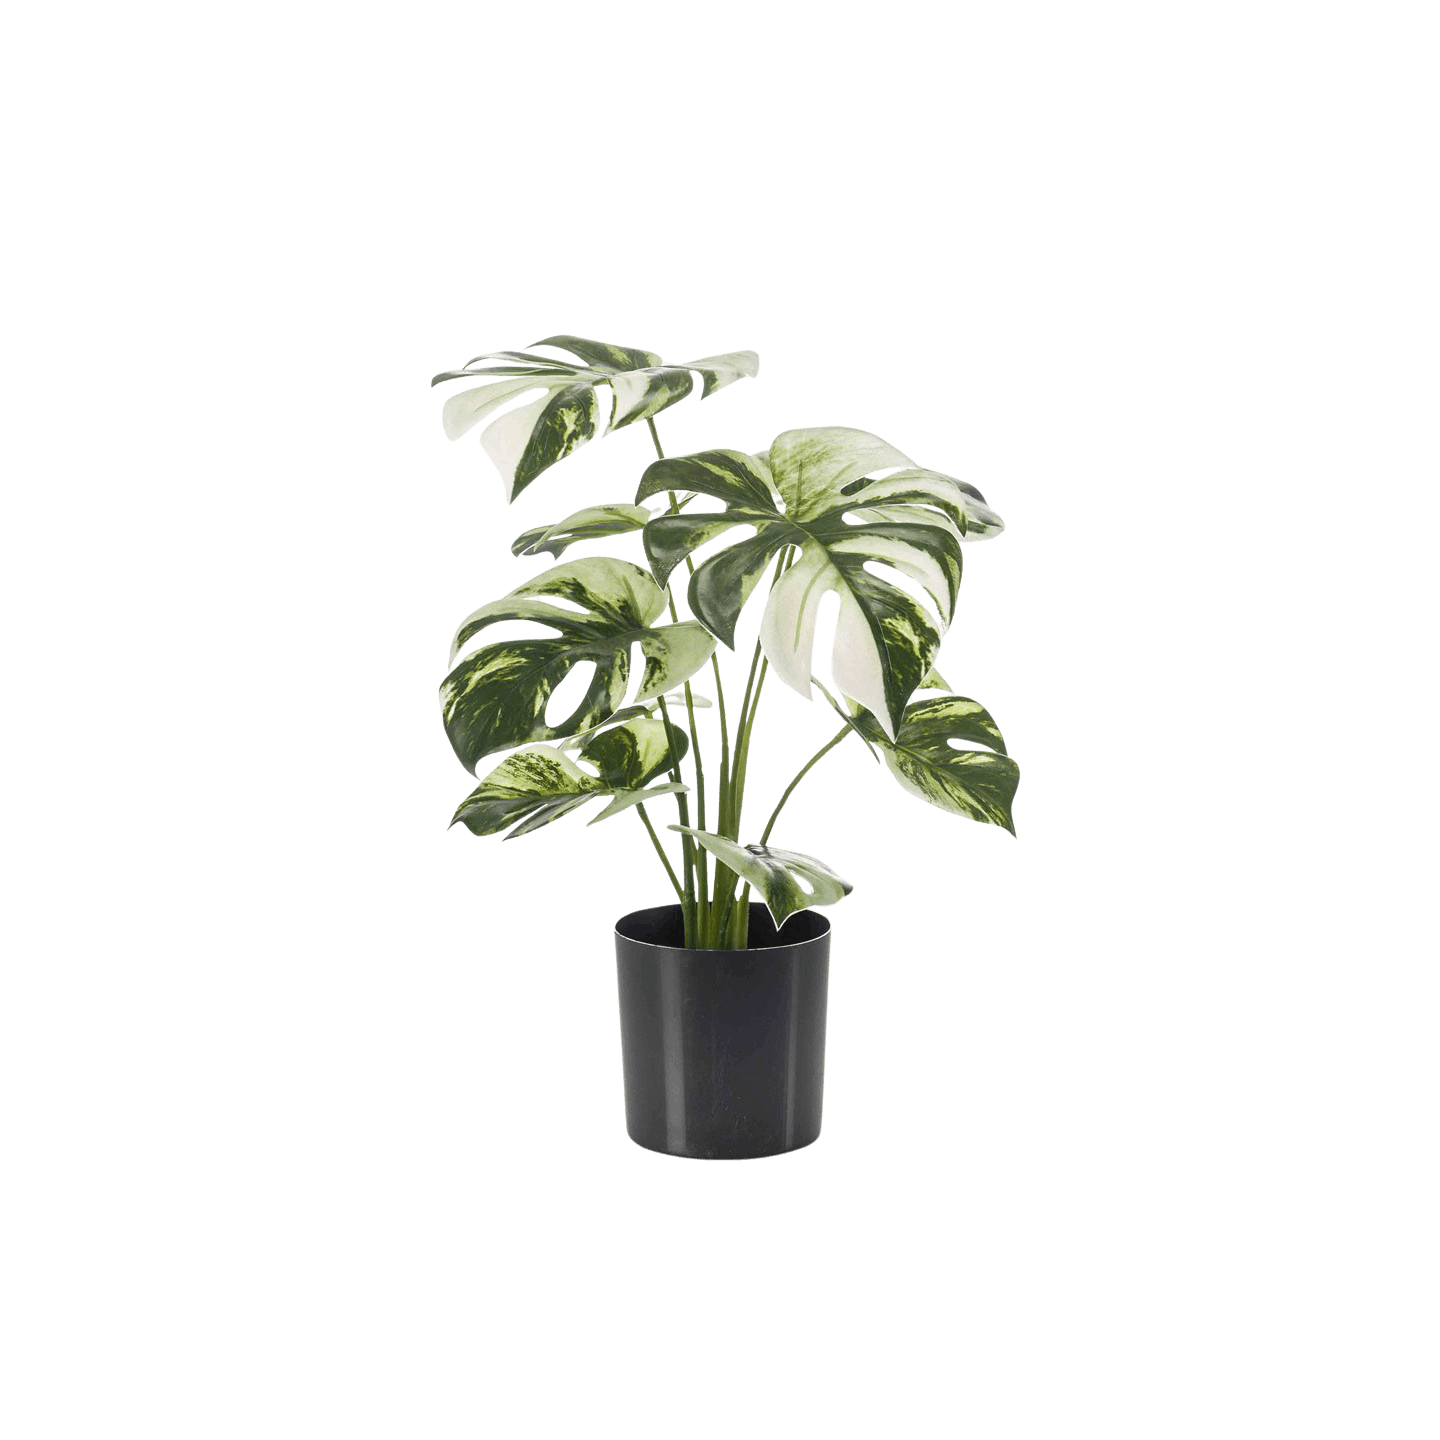 Monstera albo faux desktop plant with white/cream foliage